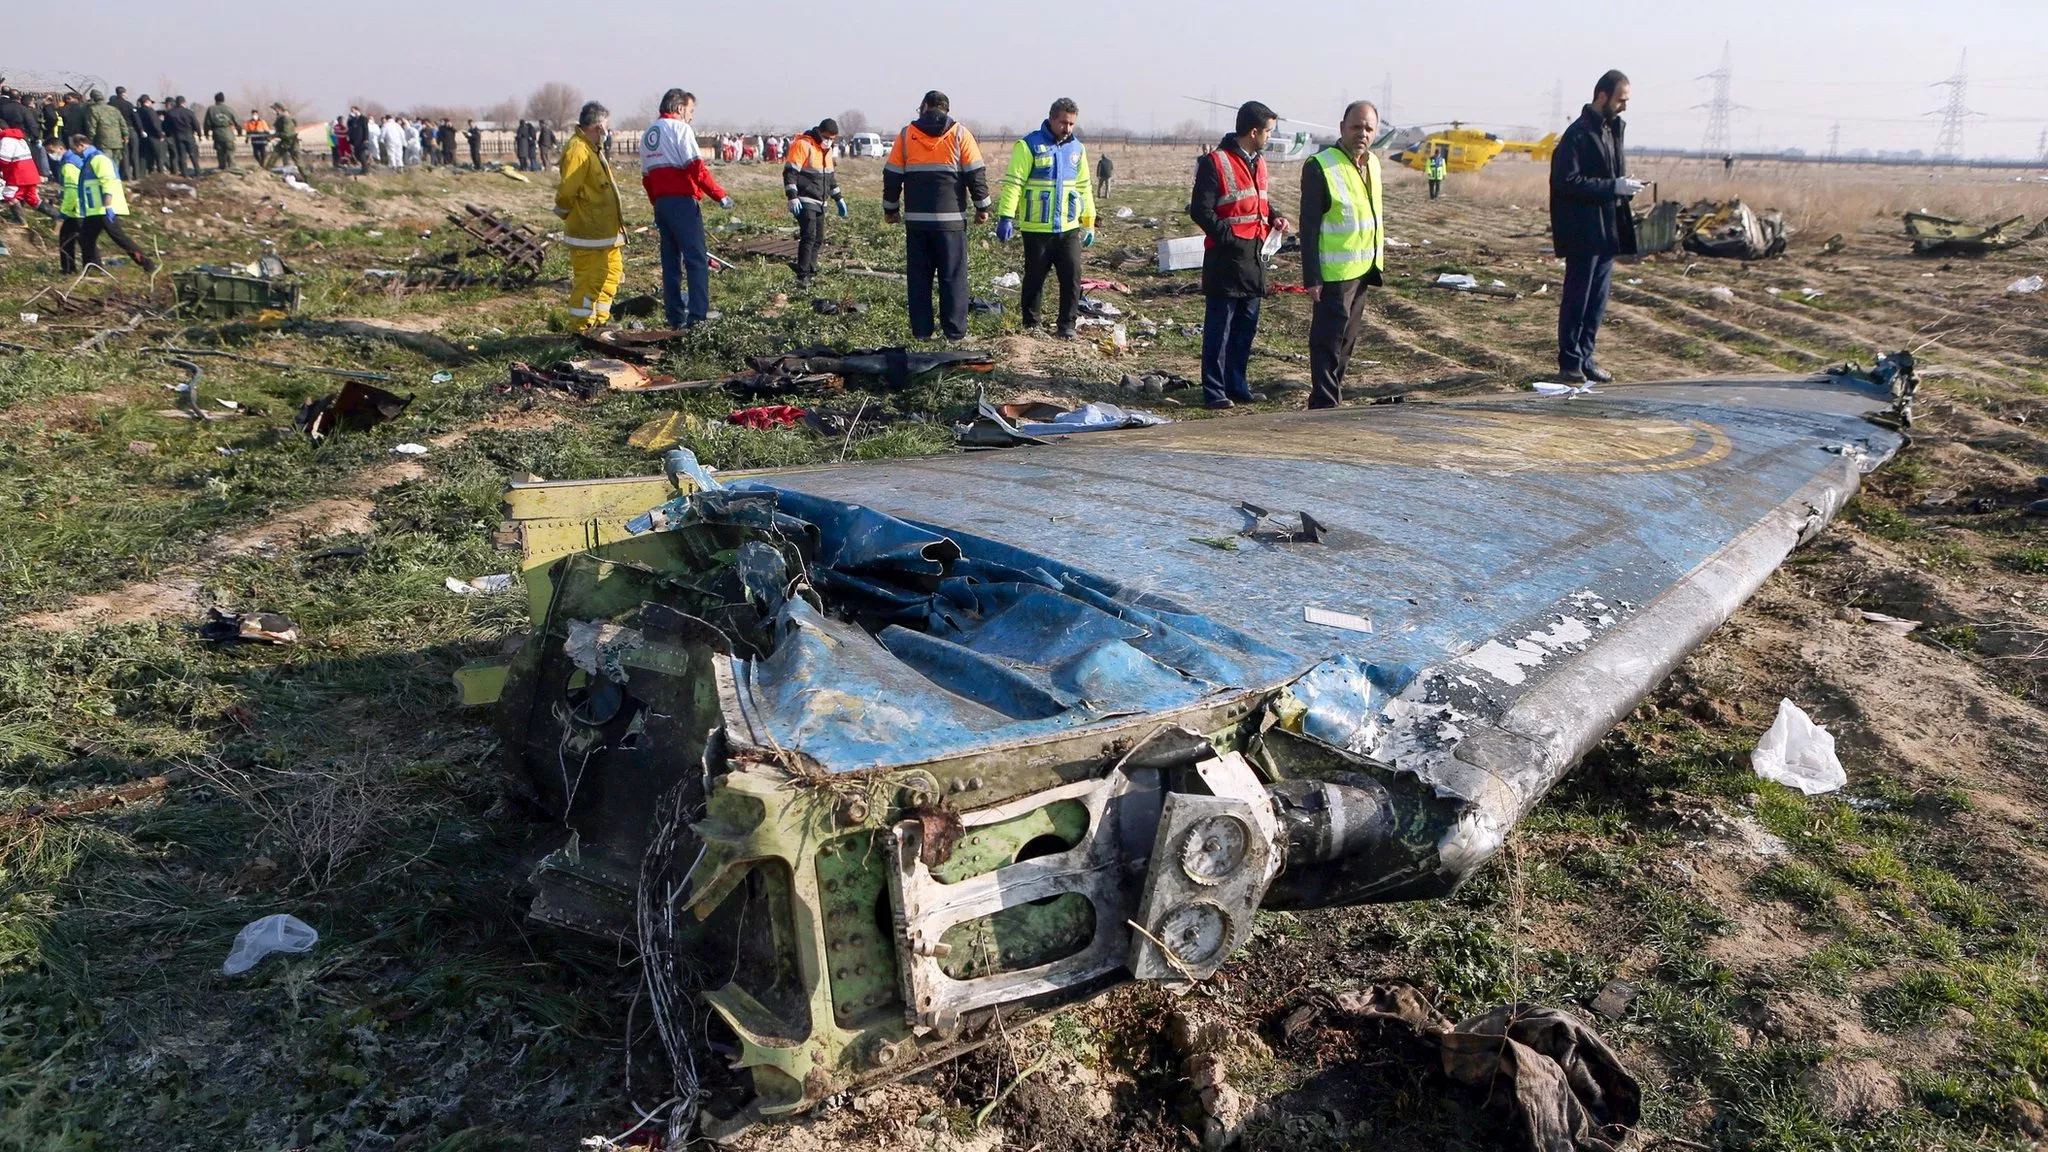 Данилов утверждает, что Иран сознательно пошел на уничтожение украинского пассажирского самолета, чтобы отвлечь внимание своих патриотов от мести американцам за убийство генерала Сулеймани